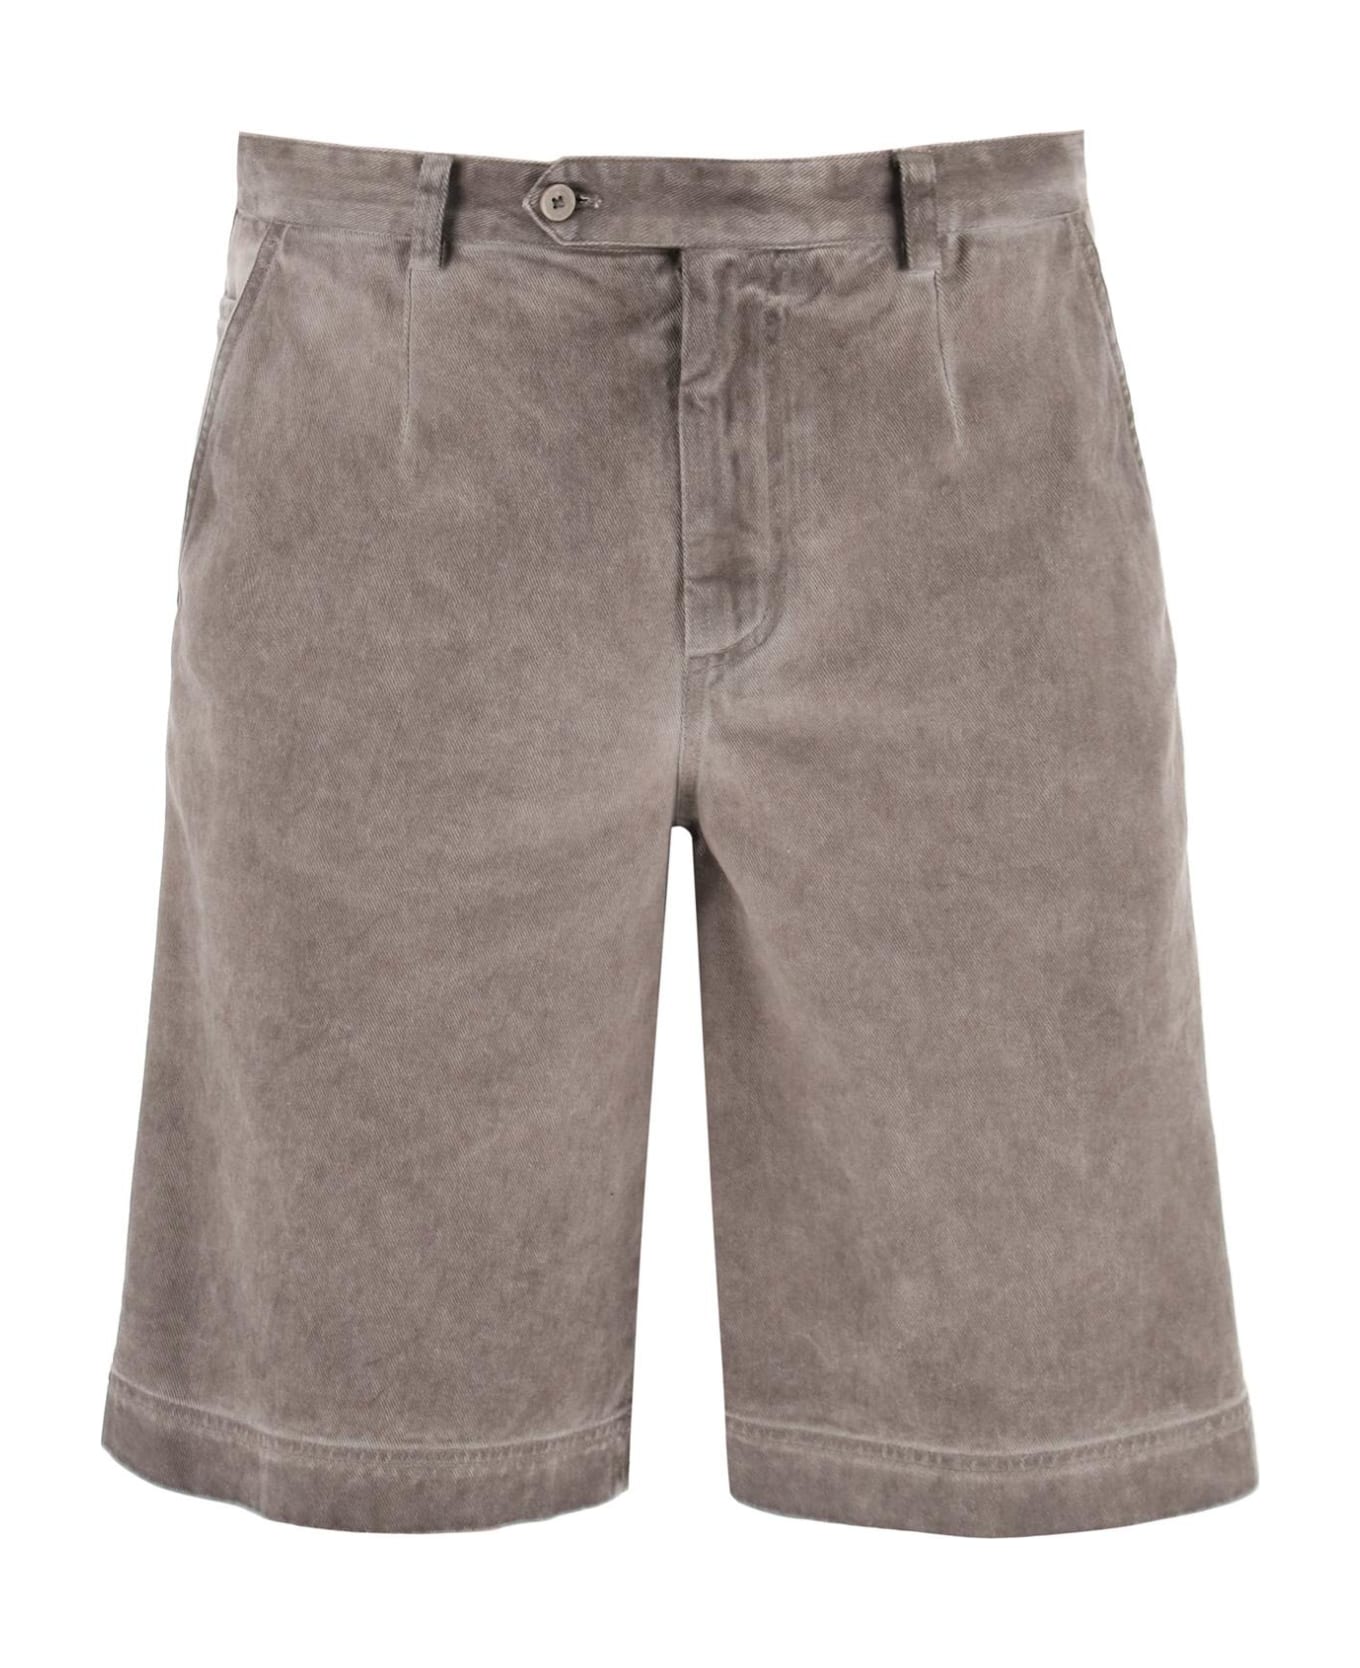 Dolce & Gabbana Bermuda Shorts - Marrone/grigio ショートパンツ